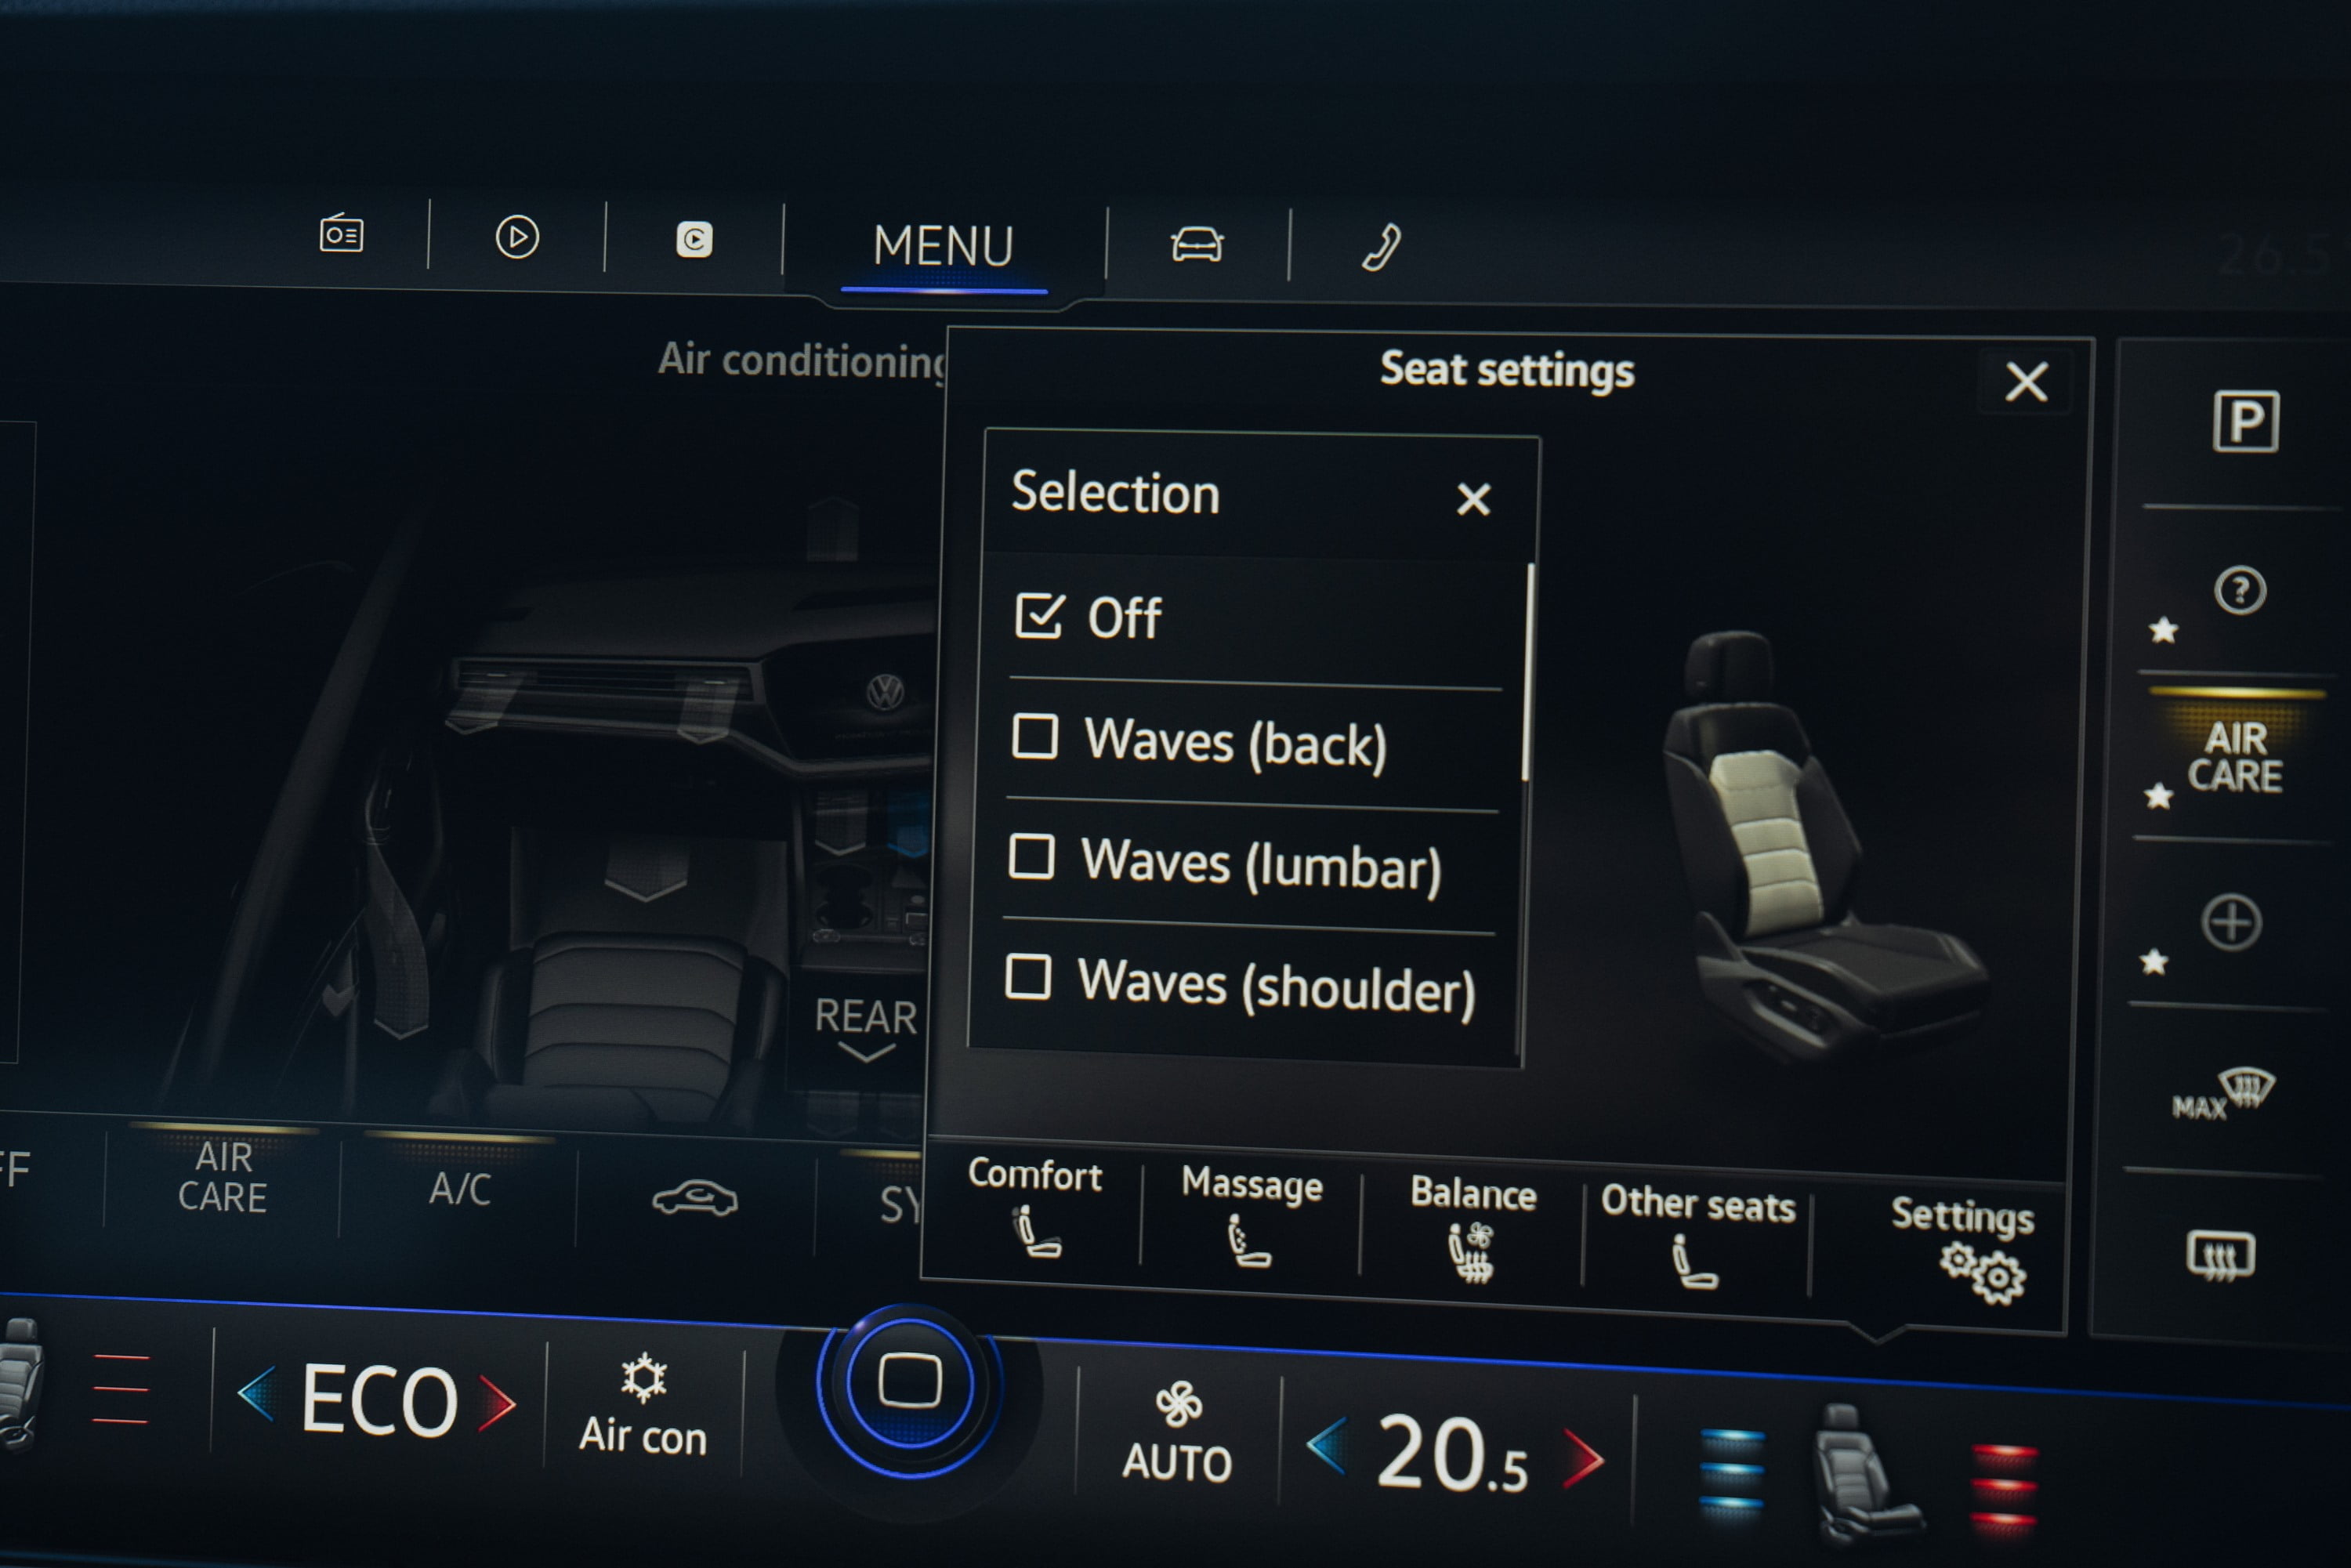 2019 VW Touareg Launch Edition 14 massage seats